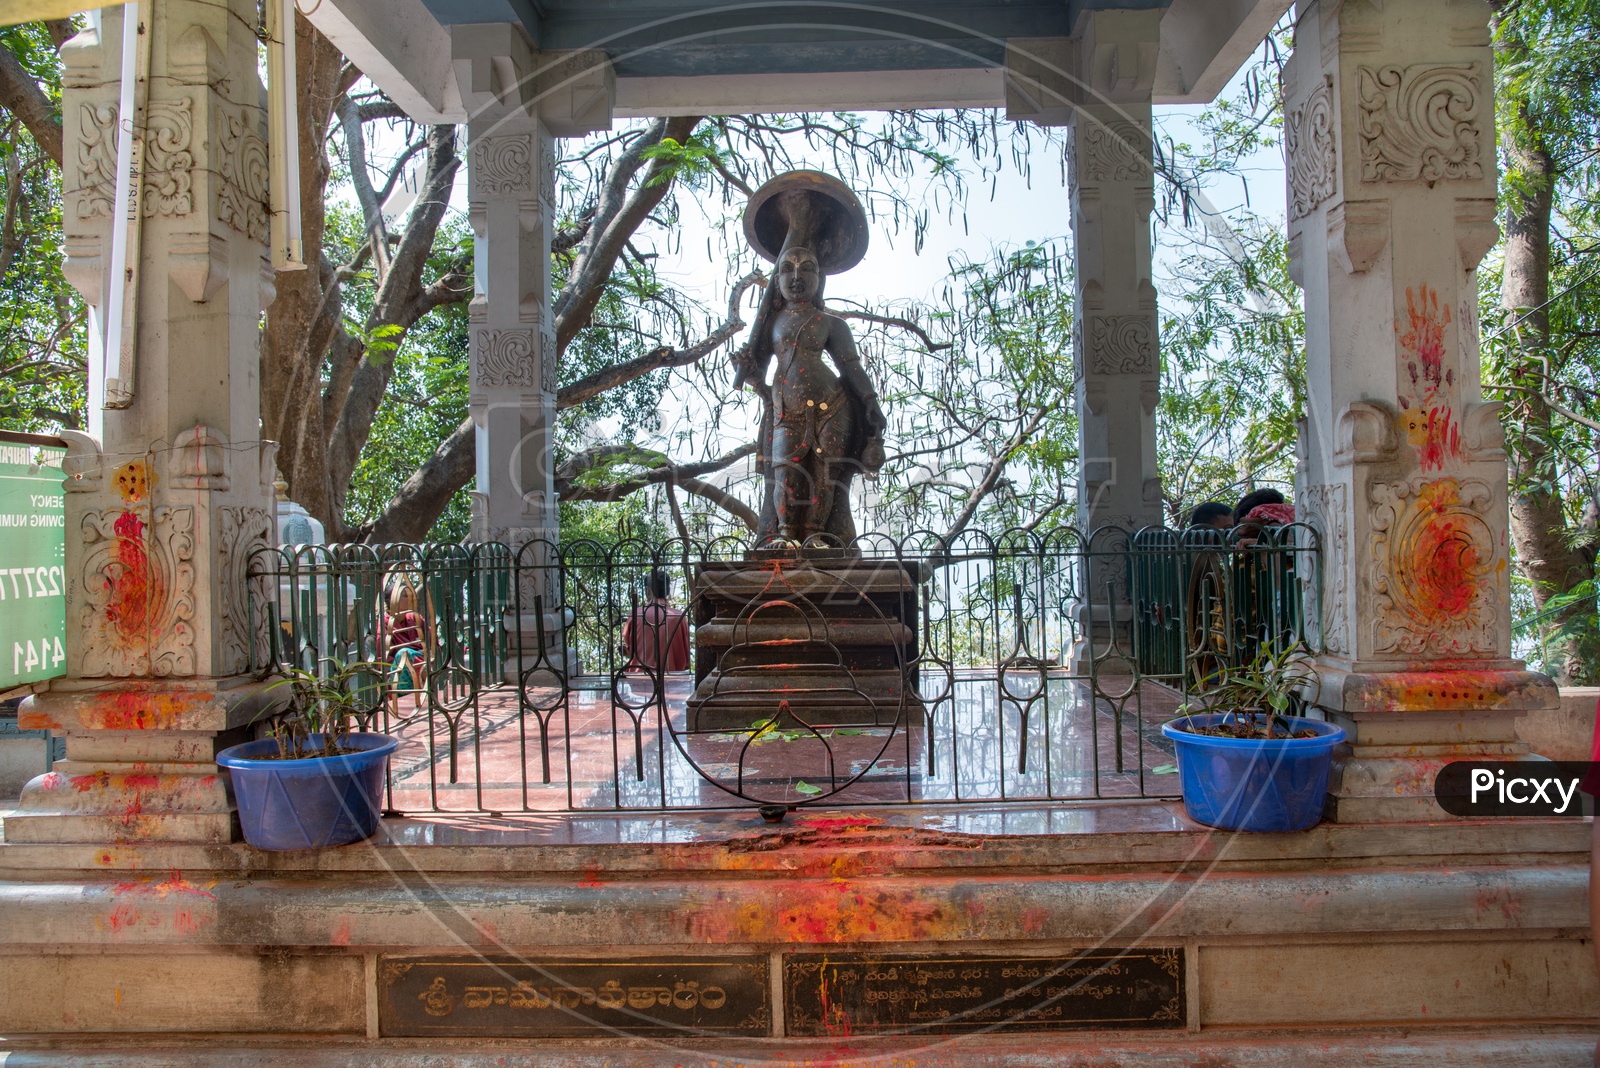 Sri Vaman Avatar of Lord Venkateswara Swamy, Tirupati